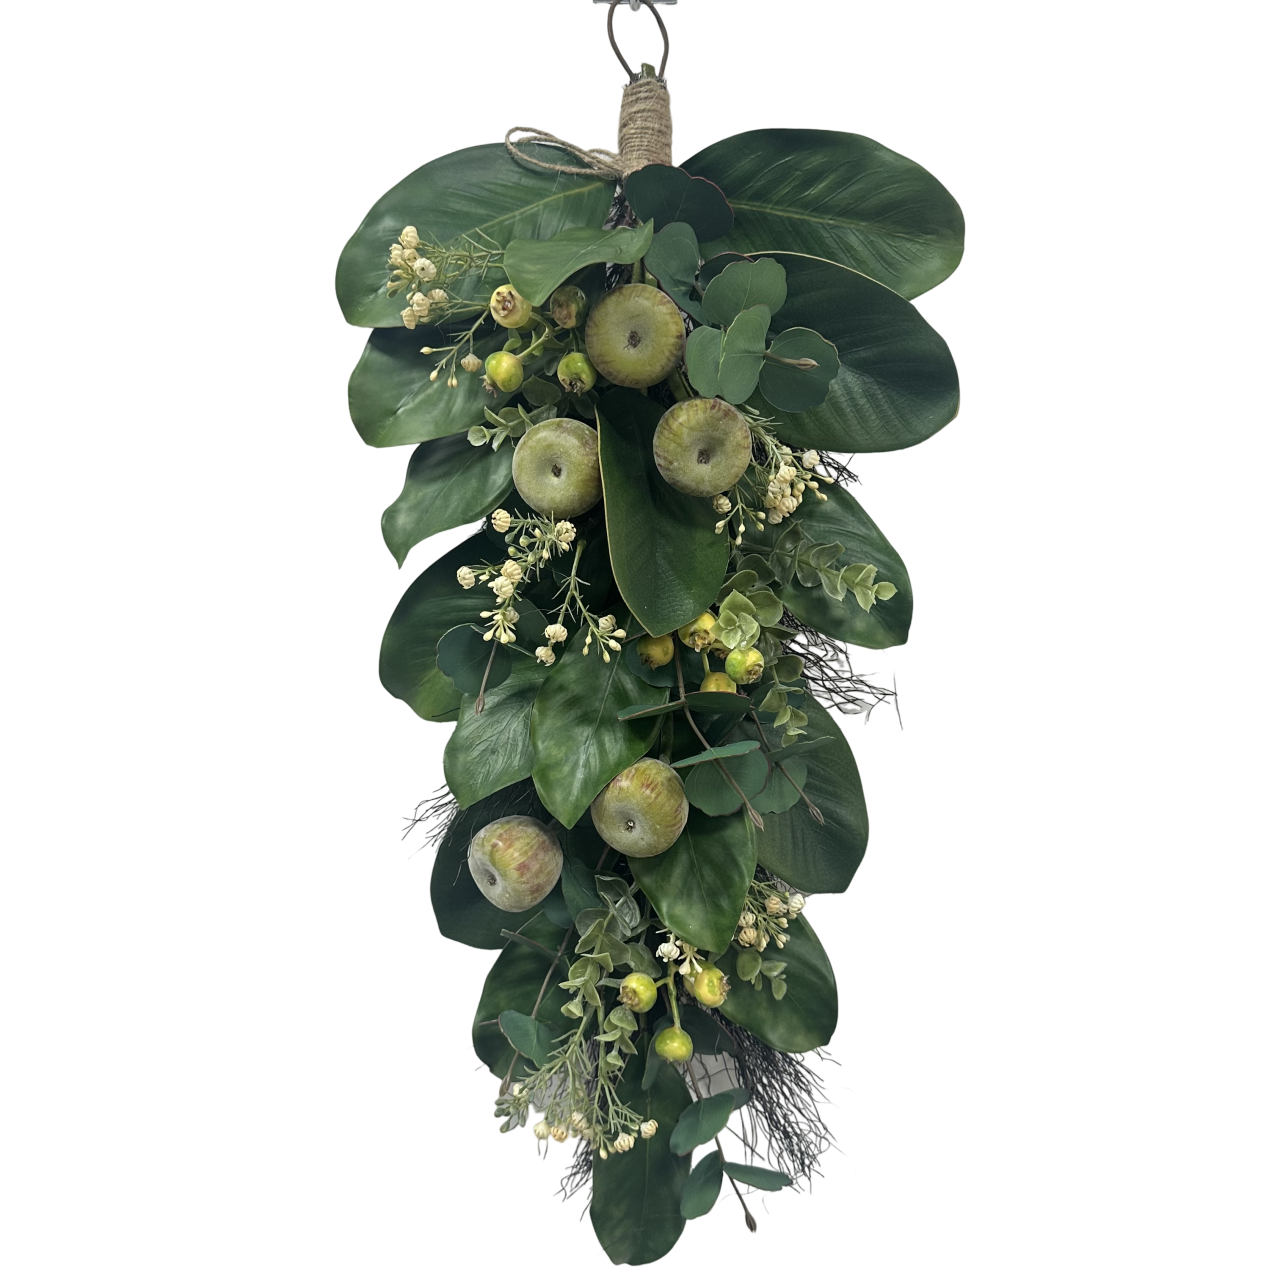 Senmasine sztuczny wieniec mieszane jabłko figowe zielone liście wiosenne wieńce dekoracja wisząca na drzwi wejściowe